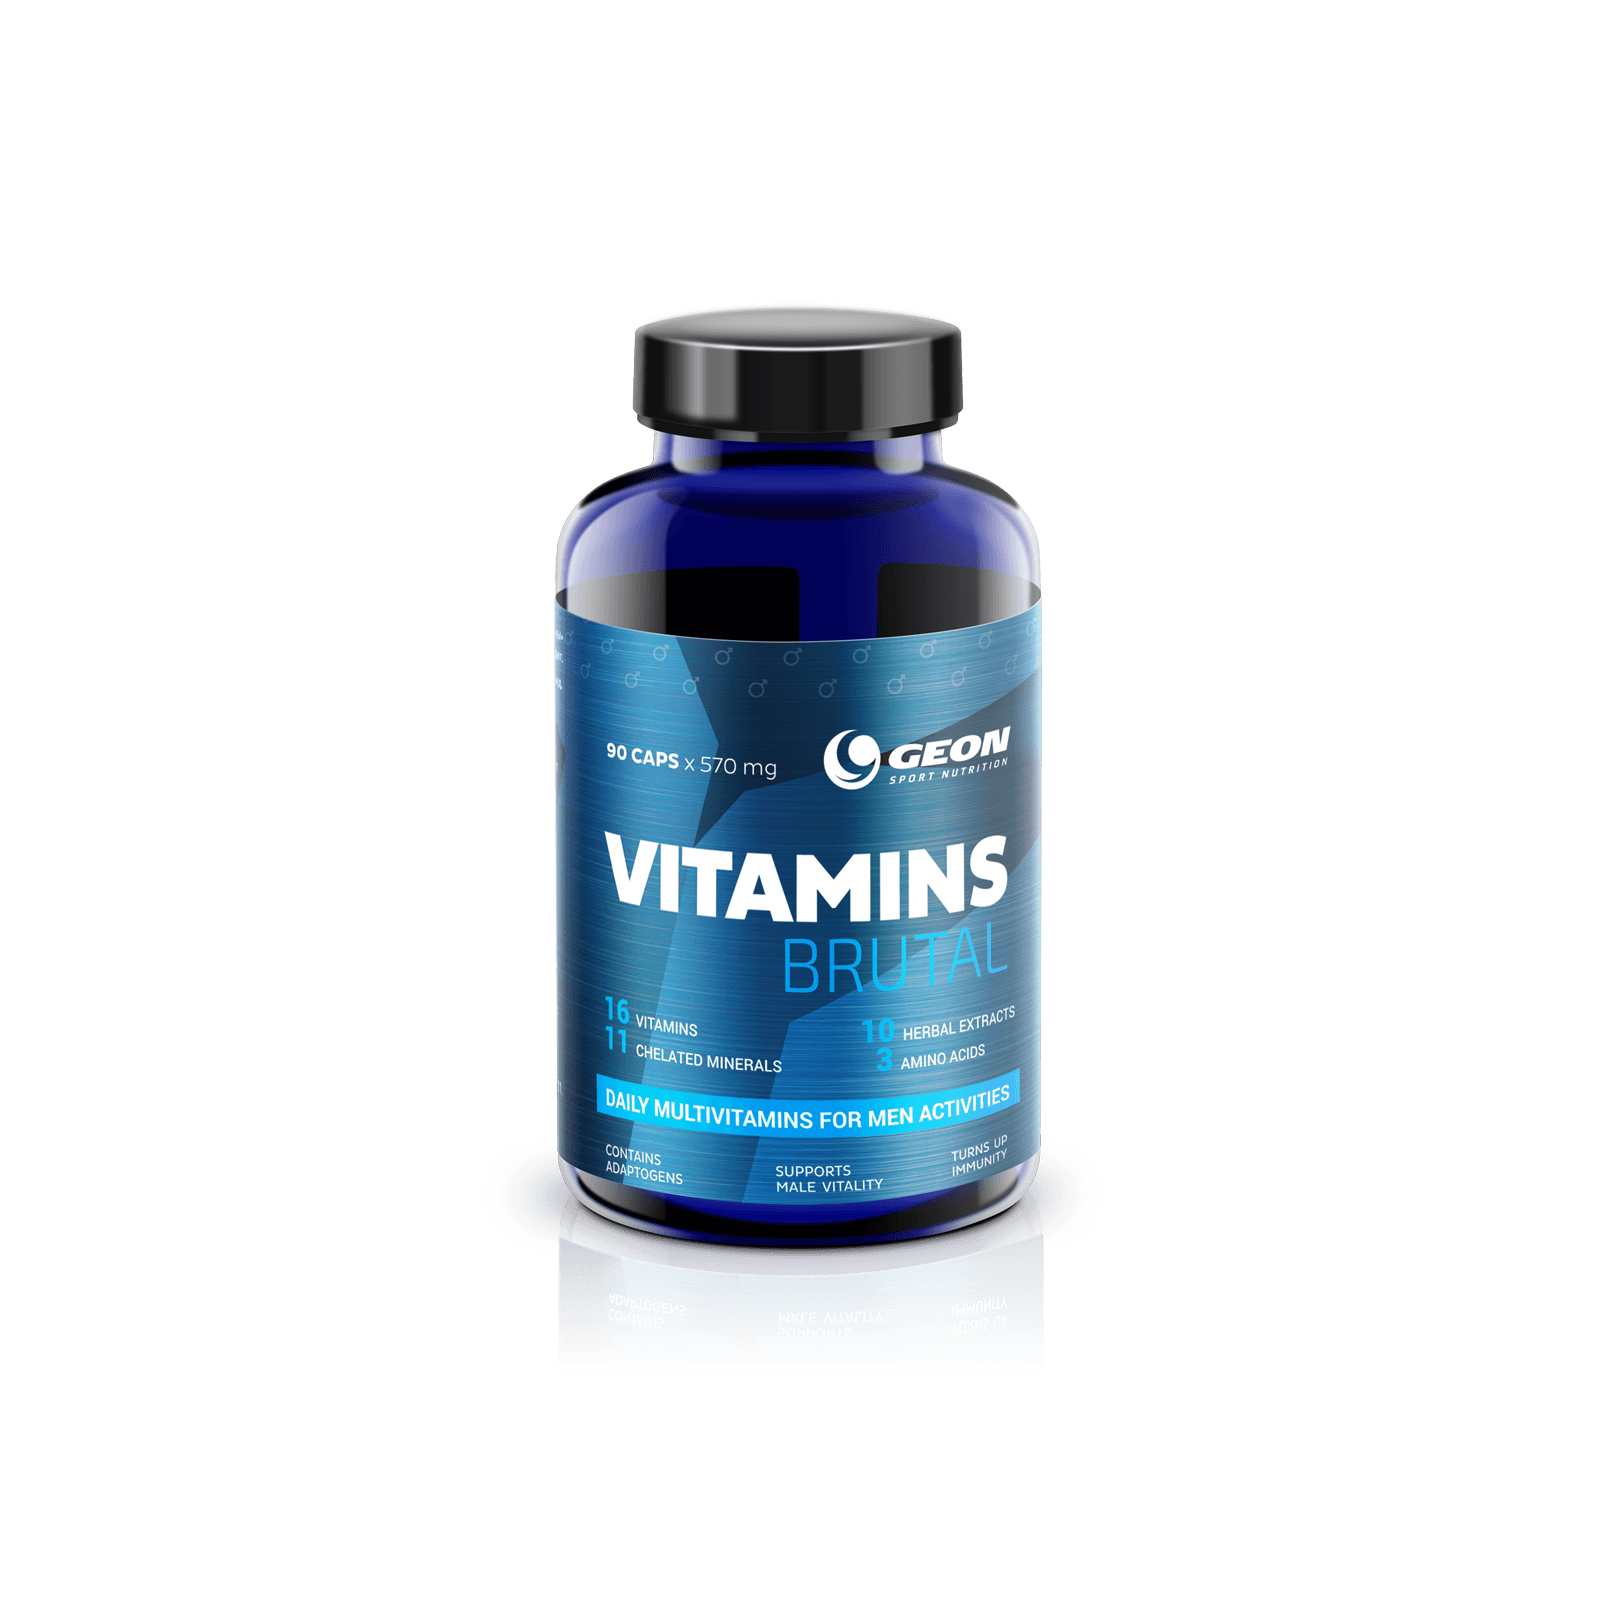 Vit vitamins. Геон витамины. Витаминно-минеральный комплекс для мужчин. Витамины brutal. Витаминный комплекс брутал.